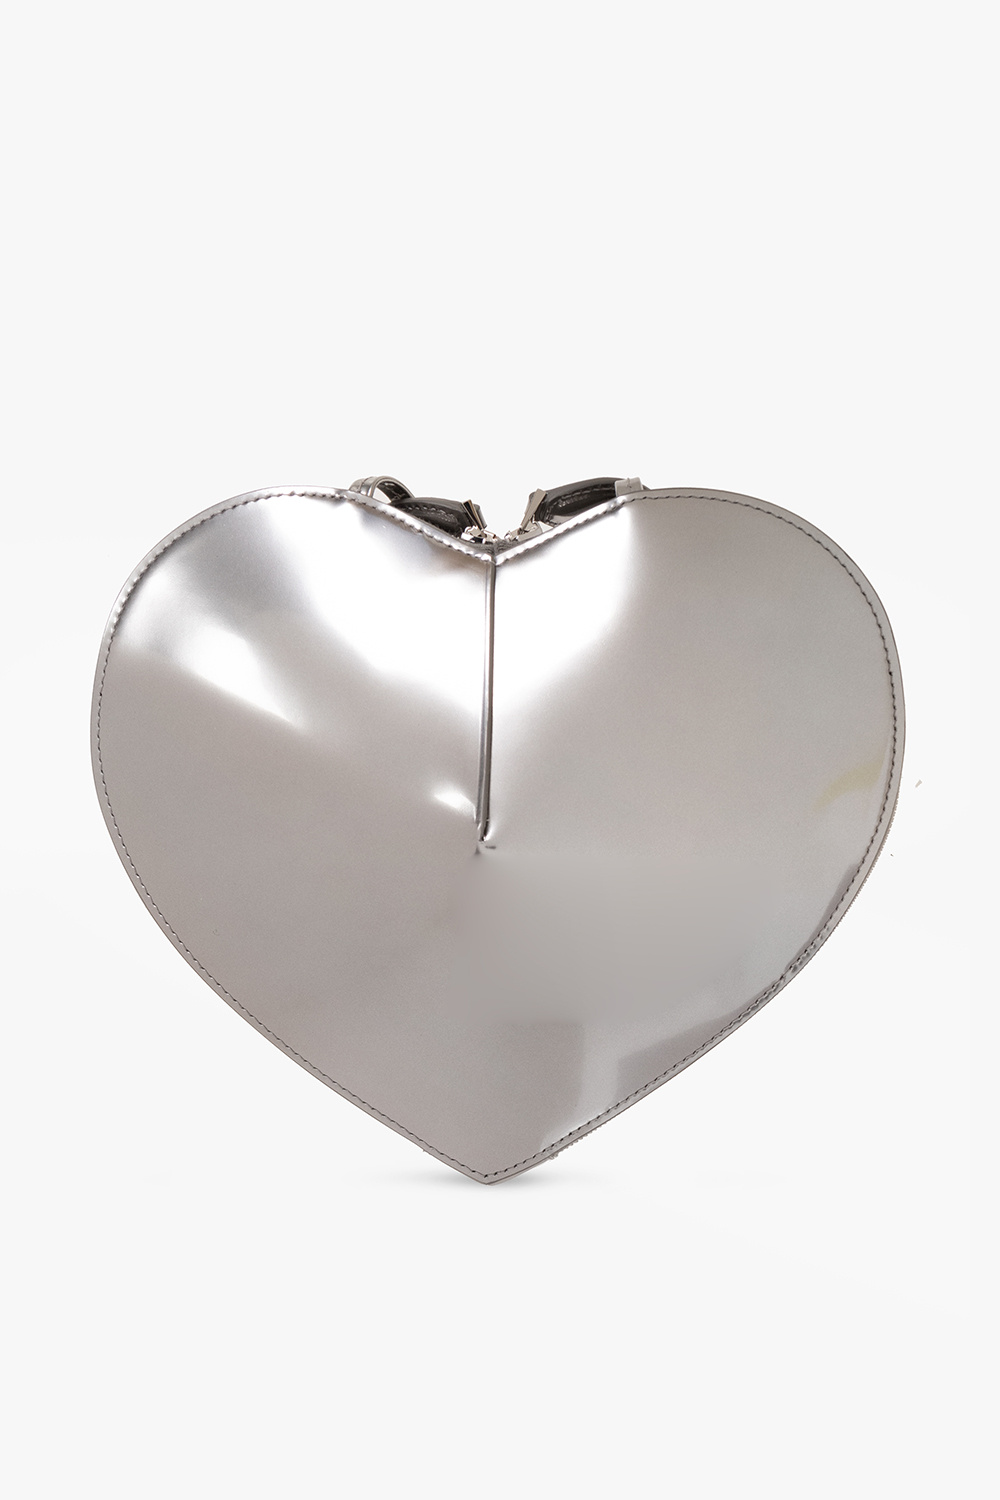 Alaïa ‘Coeur’ shoulder print bag